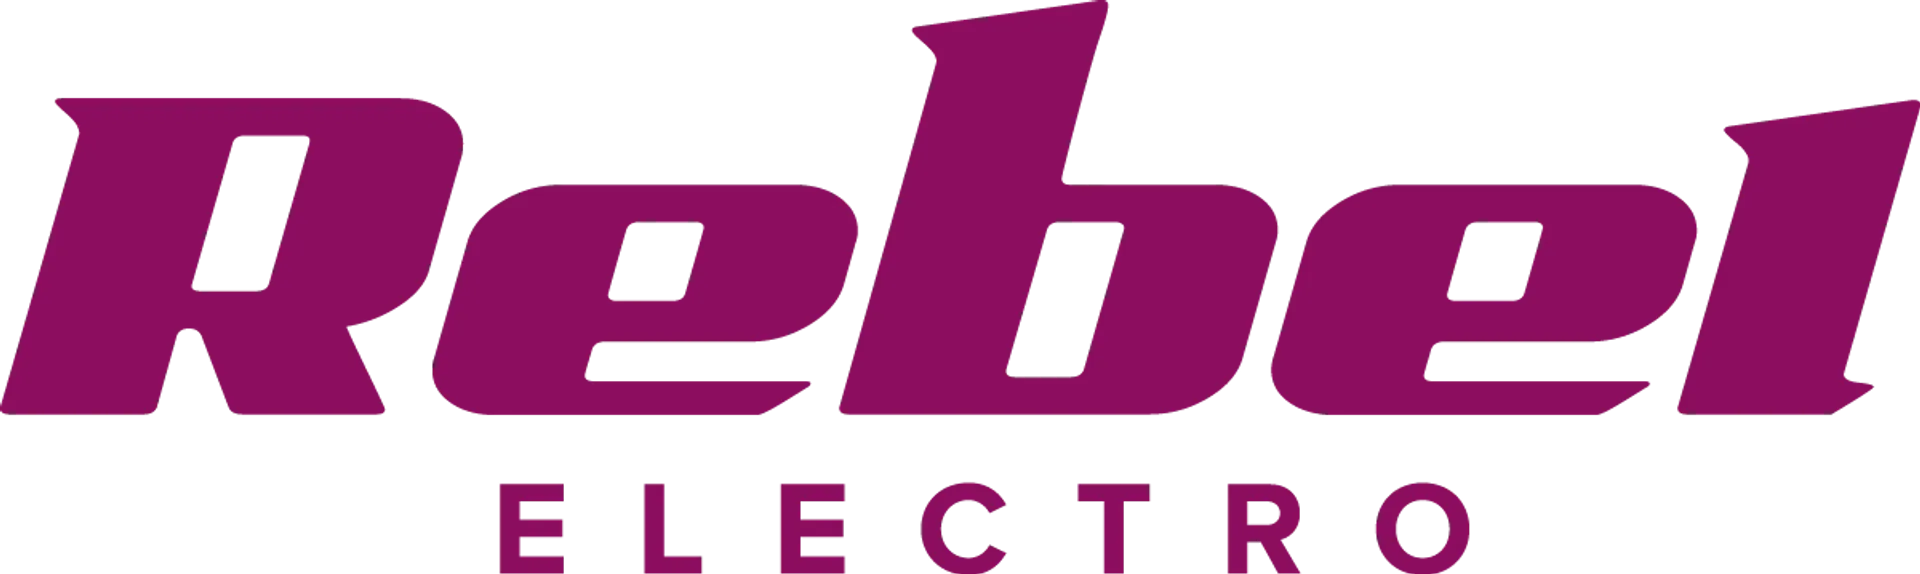 REBEL ELECTRO logo